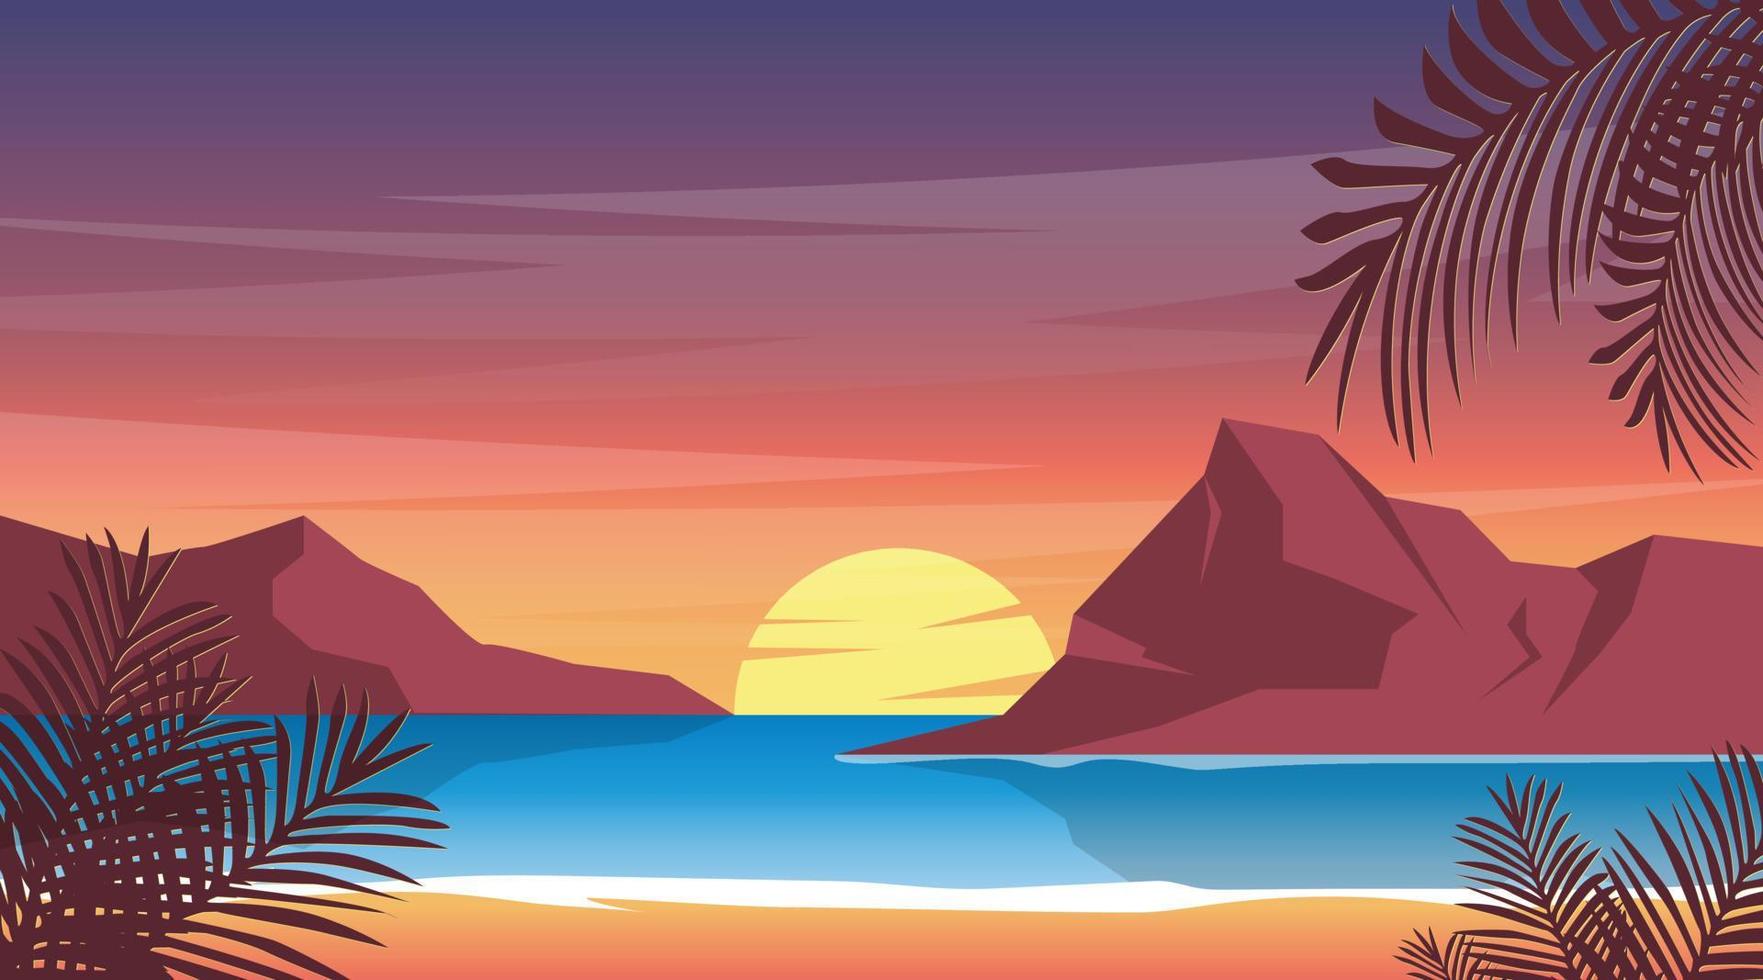 tramonto sull'illustrazione della spiaggia, carta da parati estiva della natura vettore